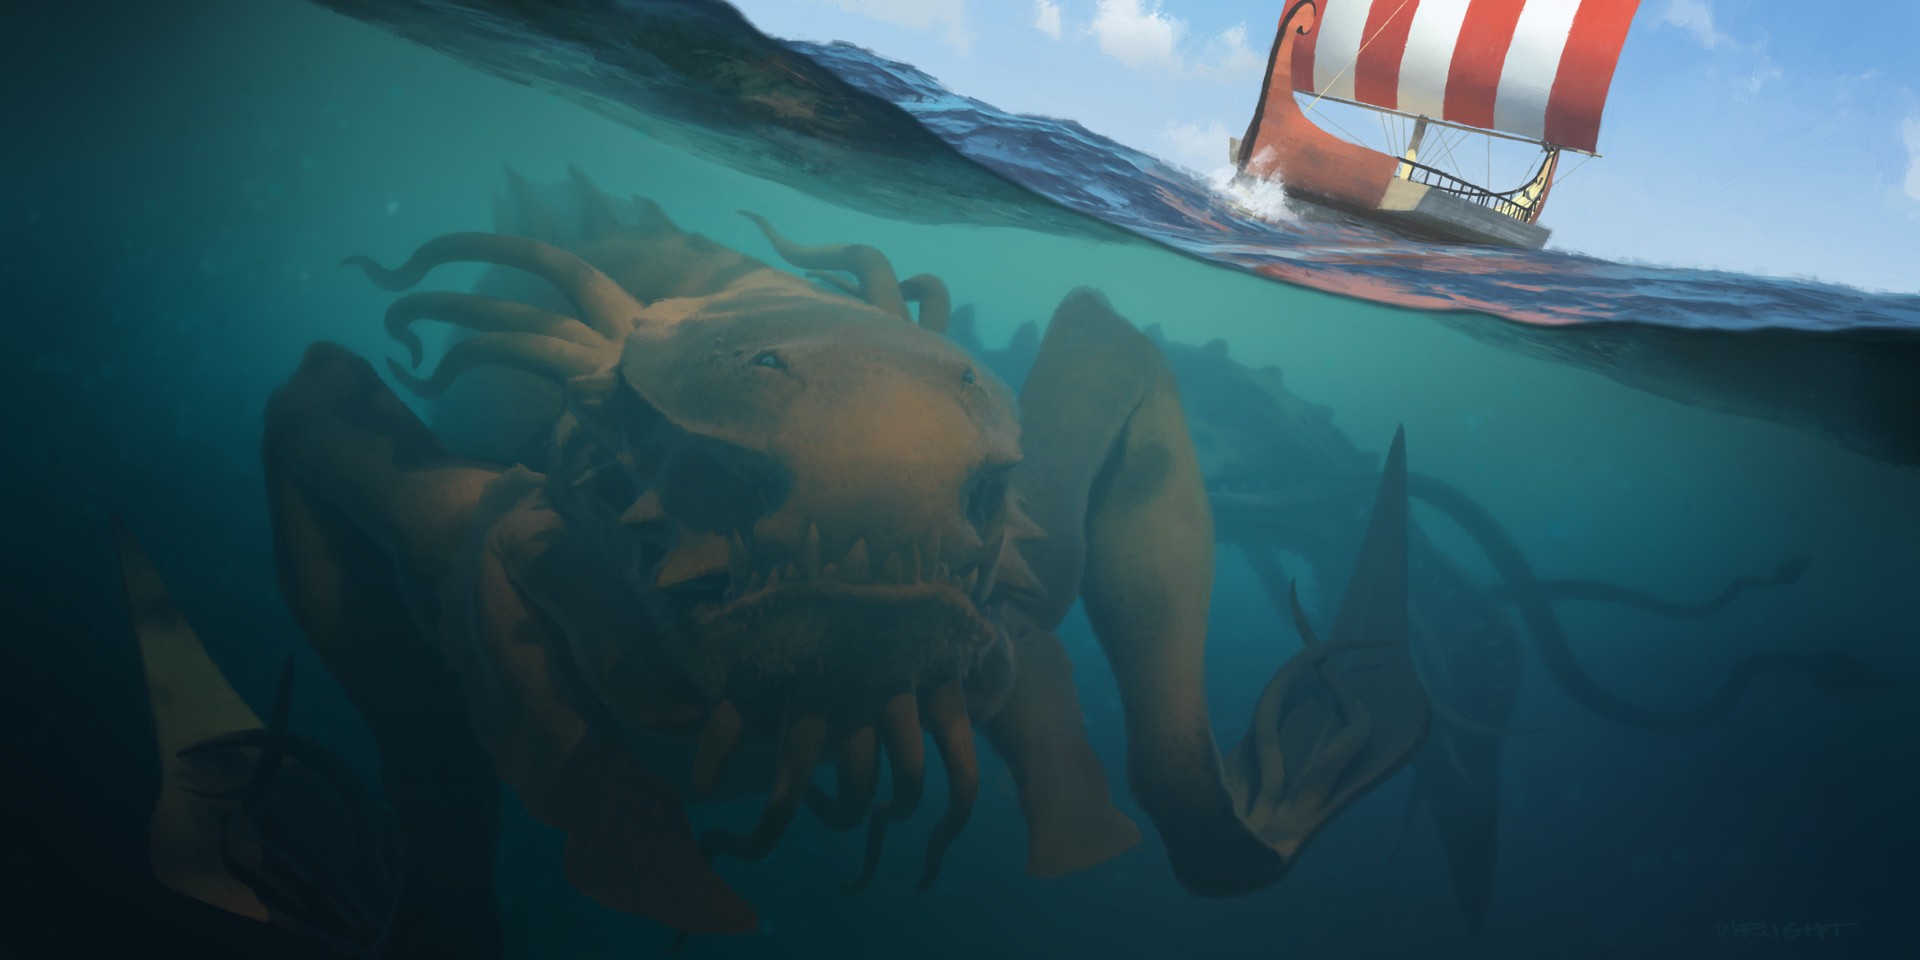 Kraken Sea Monsters Creature Underwater Fantasy Art 1920x960